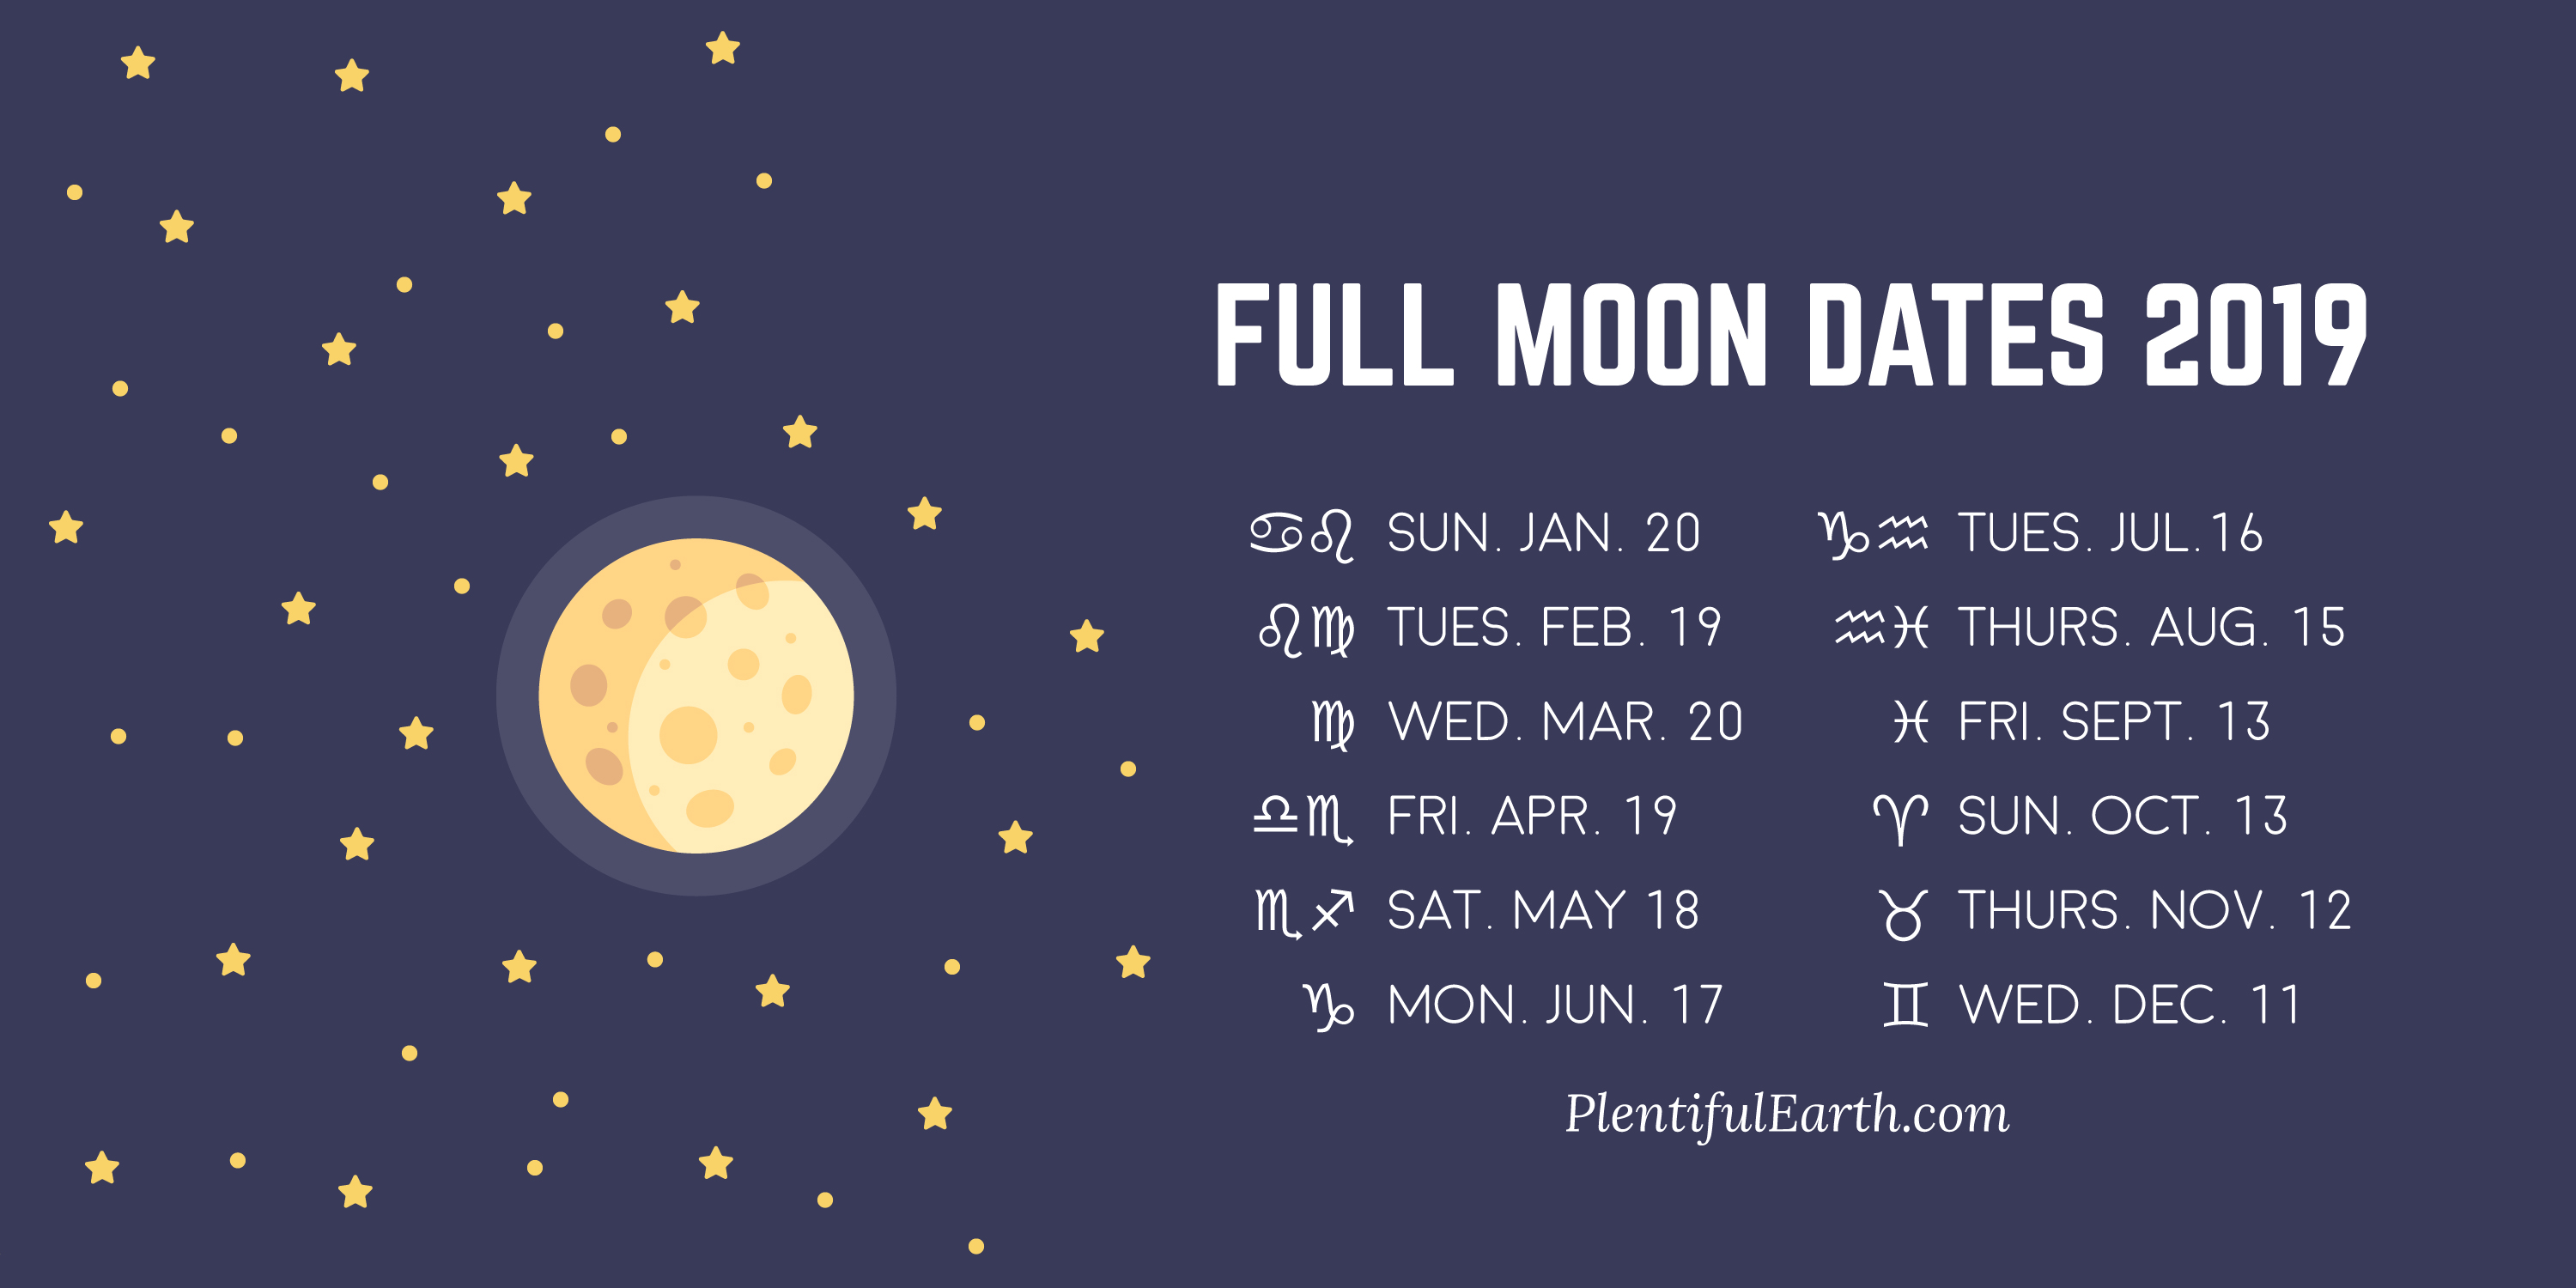 Full moon date